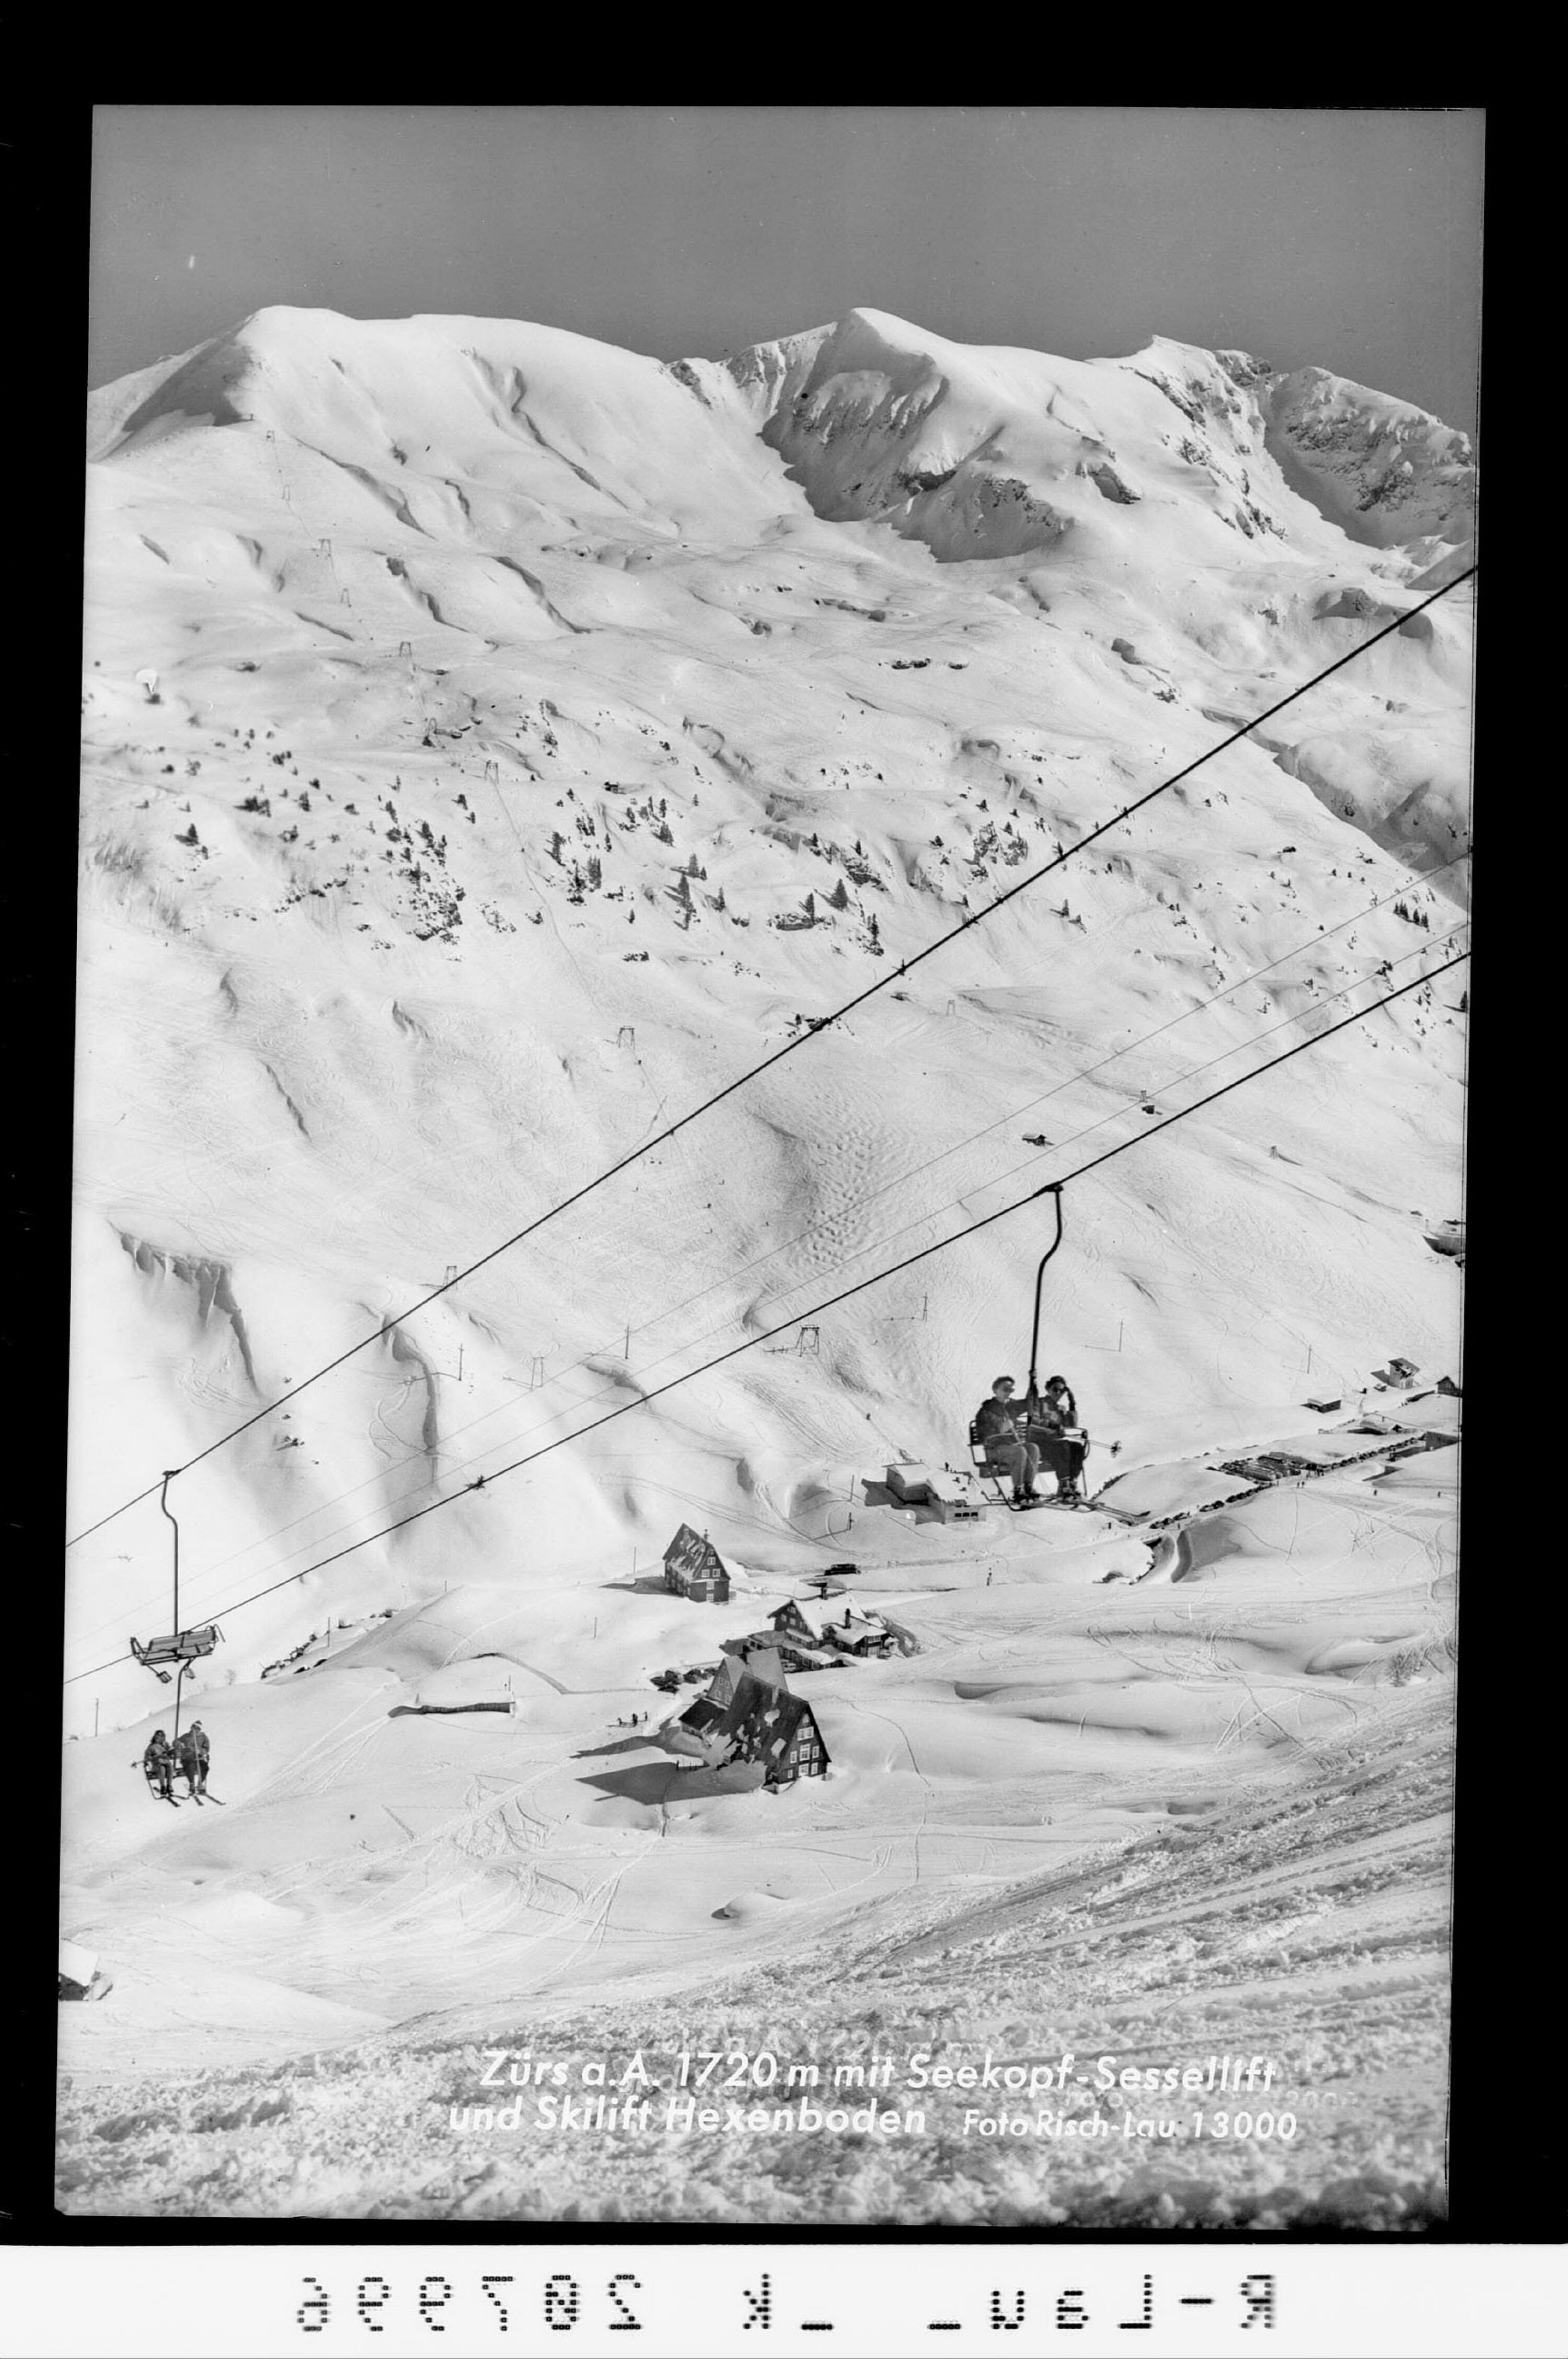 Zürs am Arlberg 1720 m mit Seekopf Sessellift und Skilift Hexenboden></div>


    <hr>
    <div class=